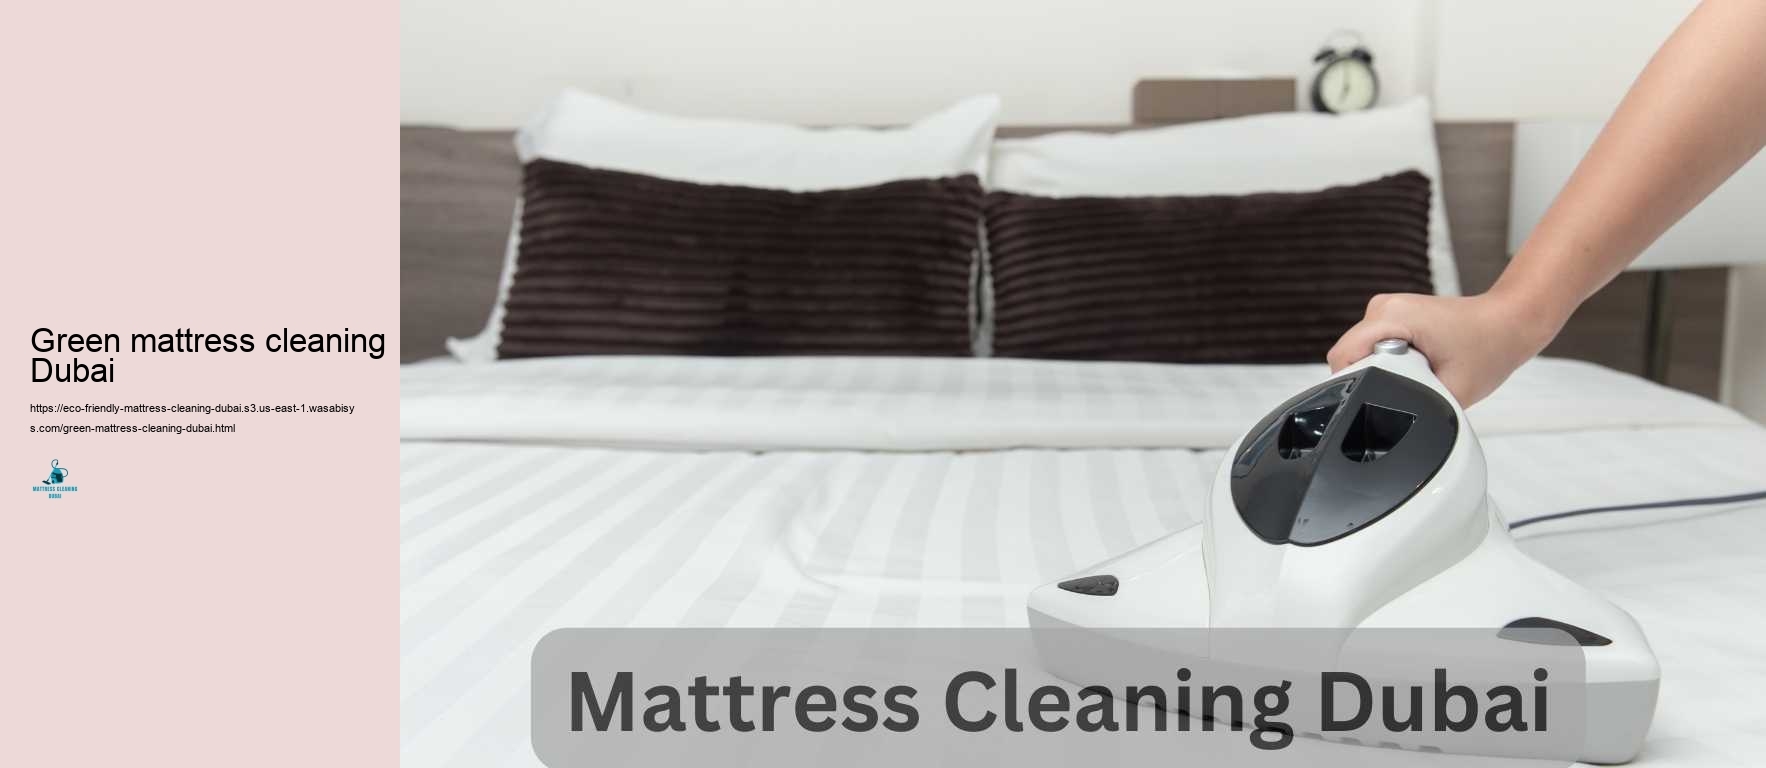 Green mattress cleaning Dubai